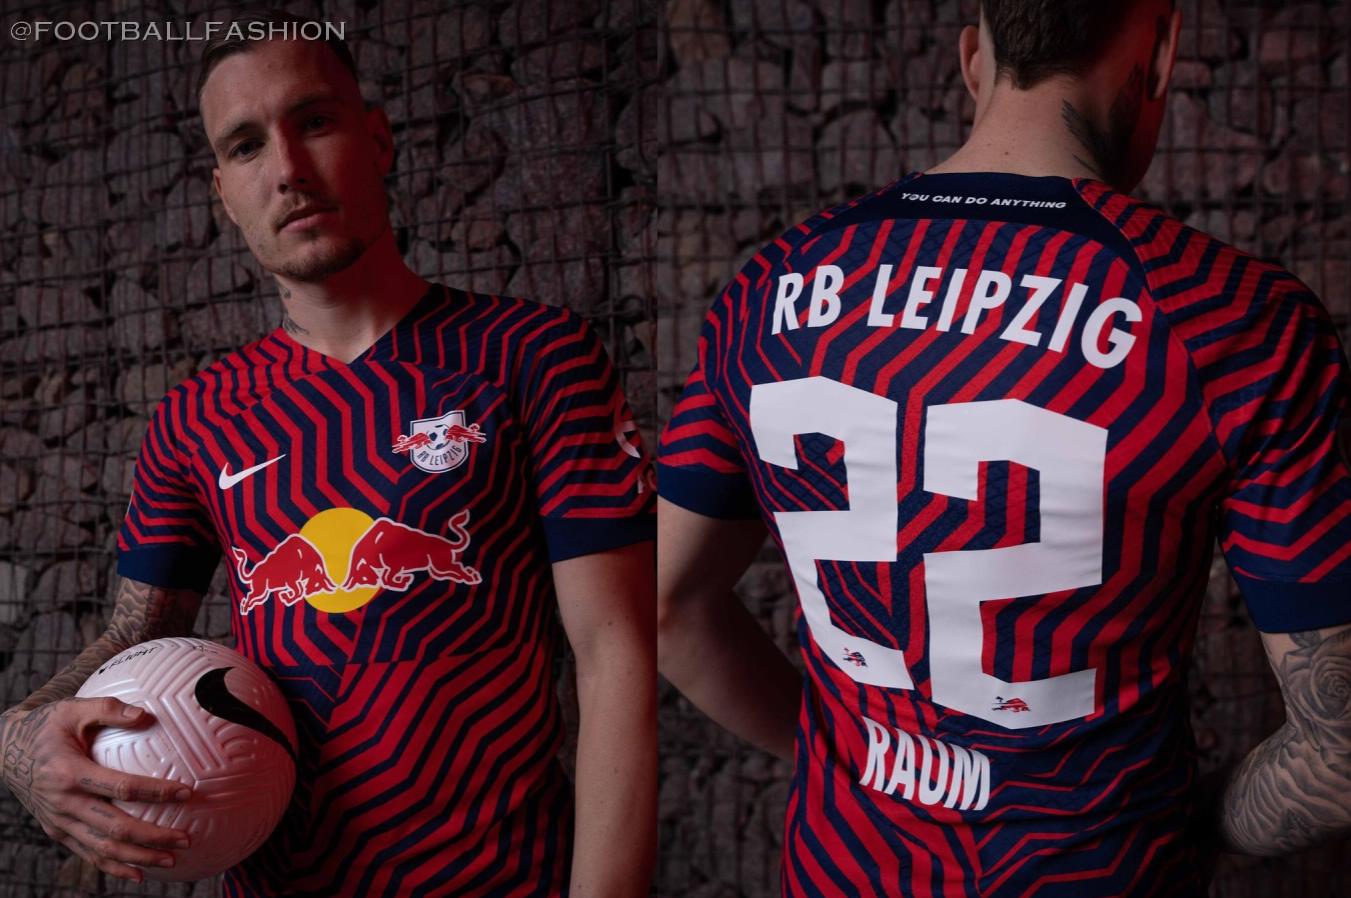 RB Leipzig 2019/20 Nike UEFA Champions League Kit - FOOTBALL FASHION